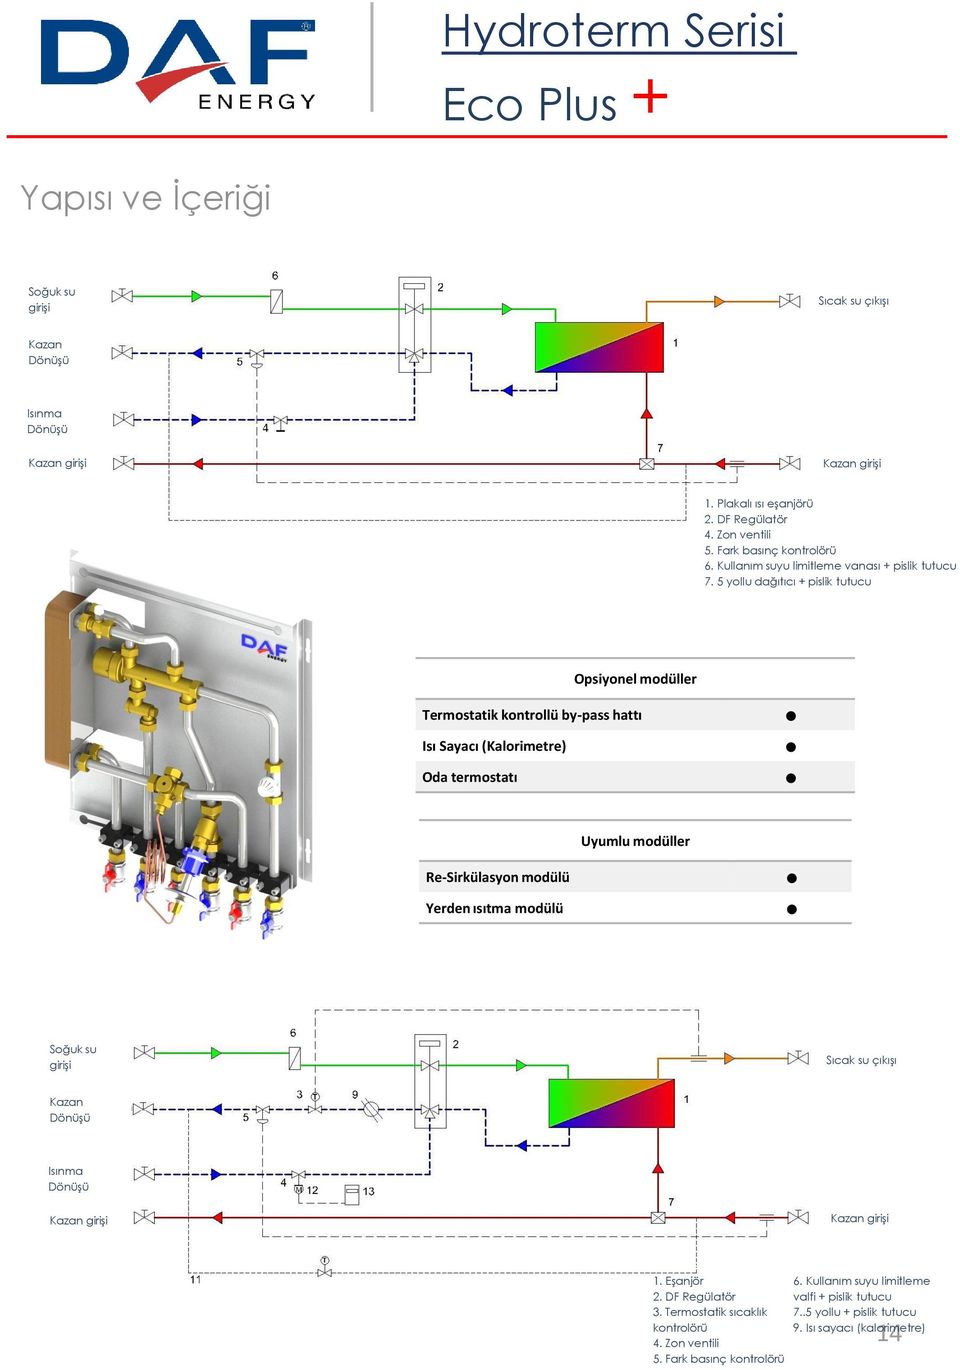 5 yollu dağıtıcı + pislik tutucu Opsiyonel modüller Termostatik kontrollü by-pass hattı Isı Sayacı (Kalorimetre) Oda termostatı Uyumlu modüller Re-Sirkülasyon modülü Yerden